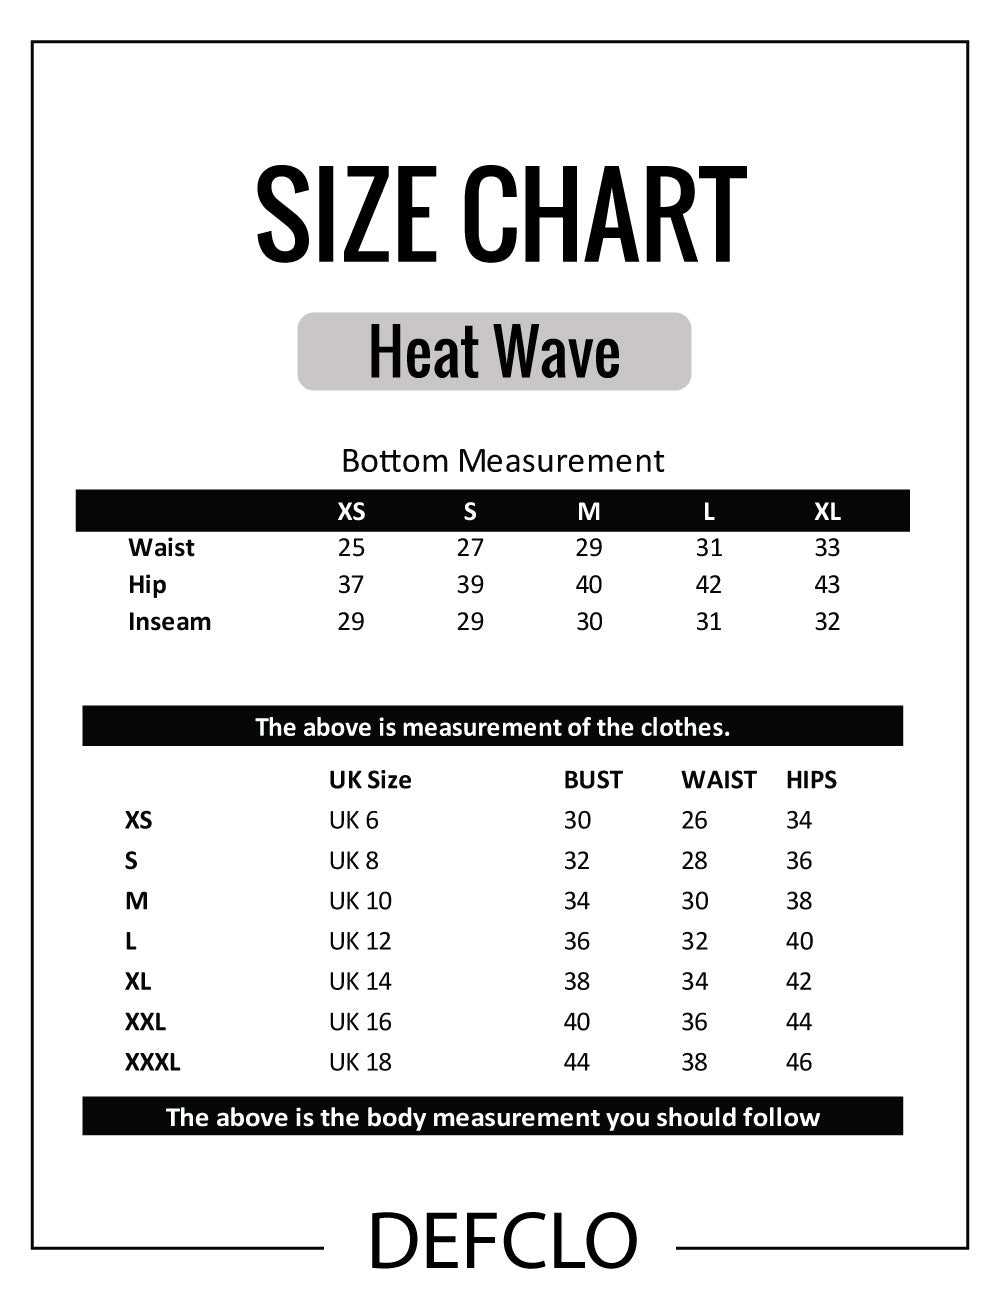 Heat Wave - Top